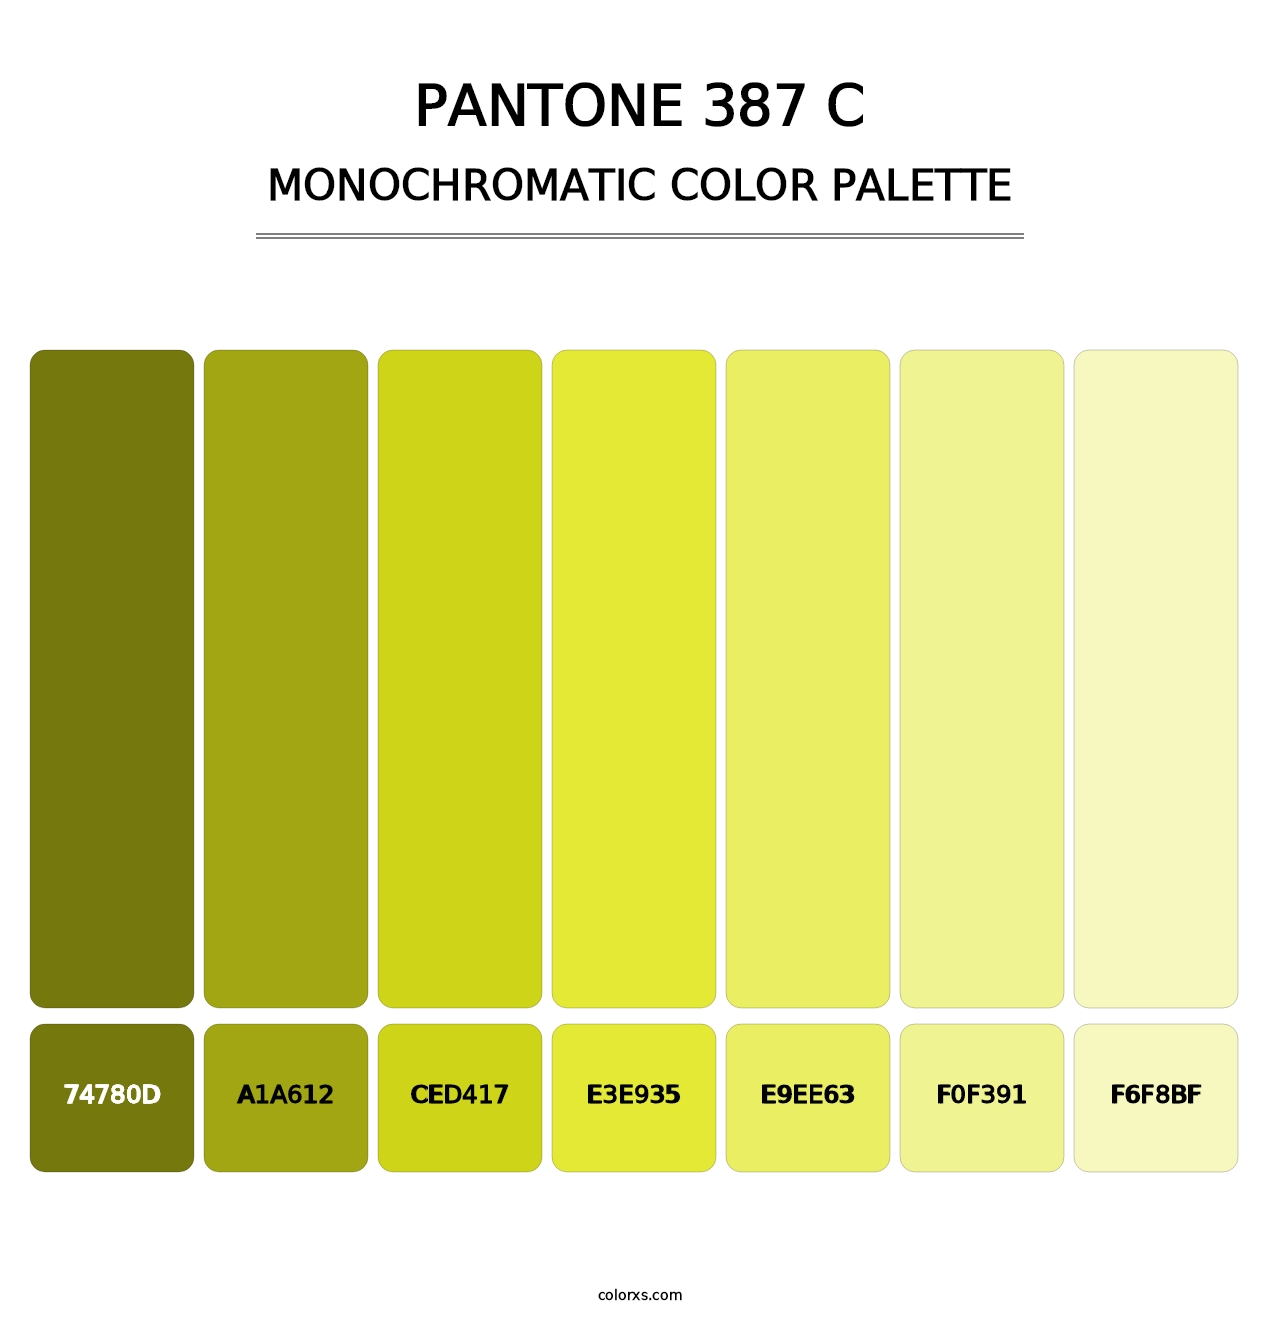 PANTONE 387 C - Monochromatic Color Palette